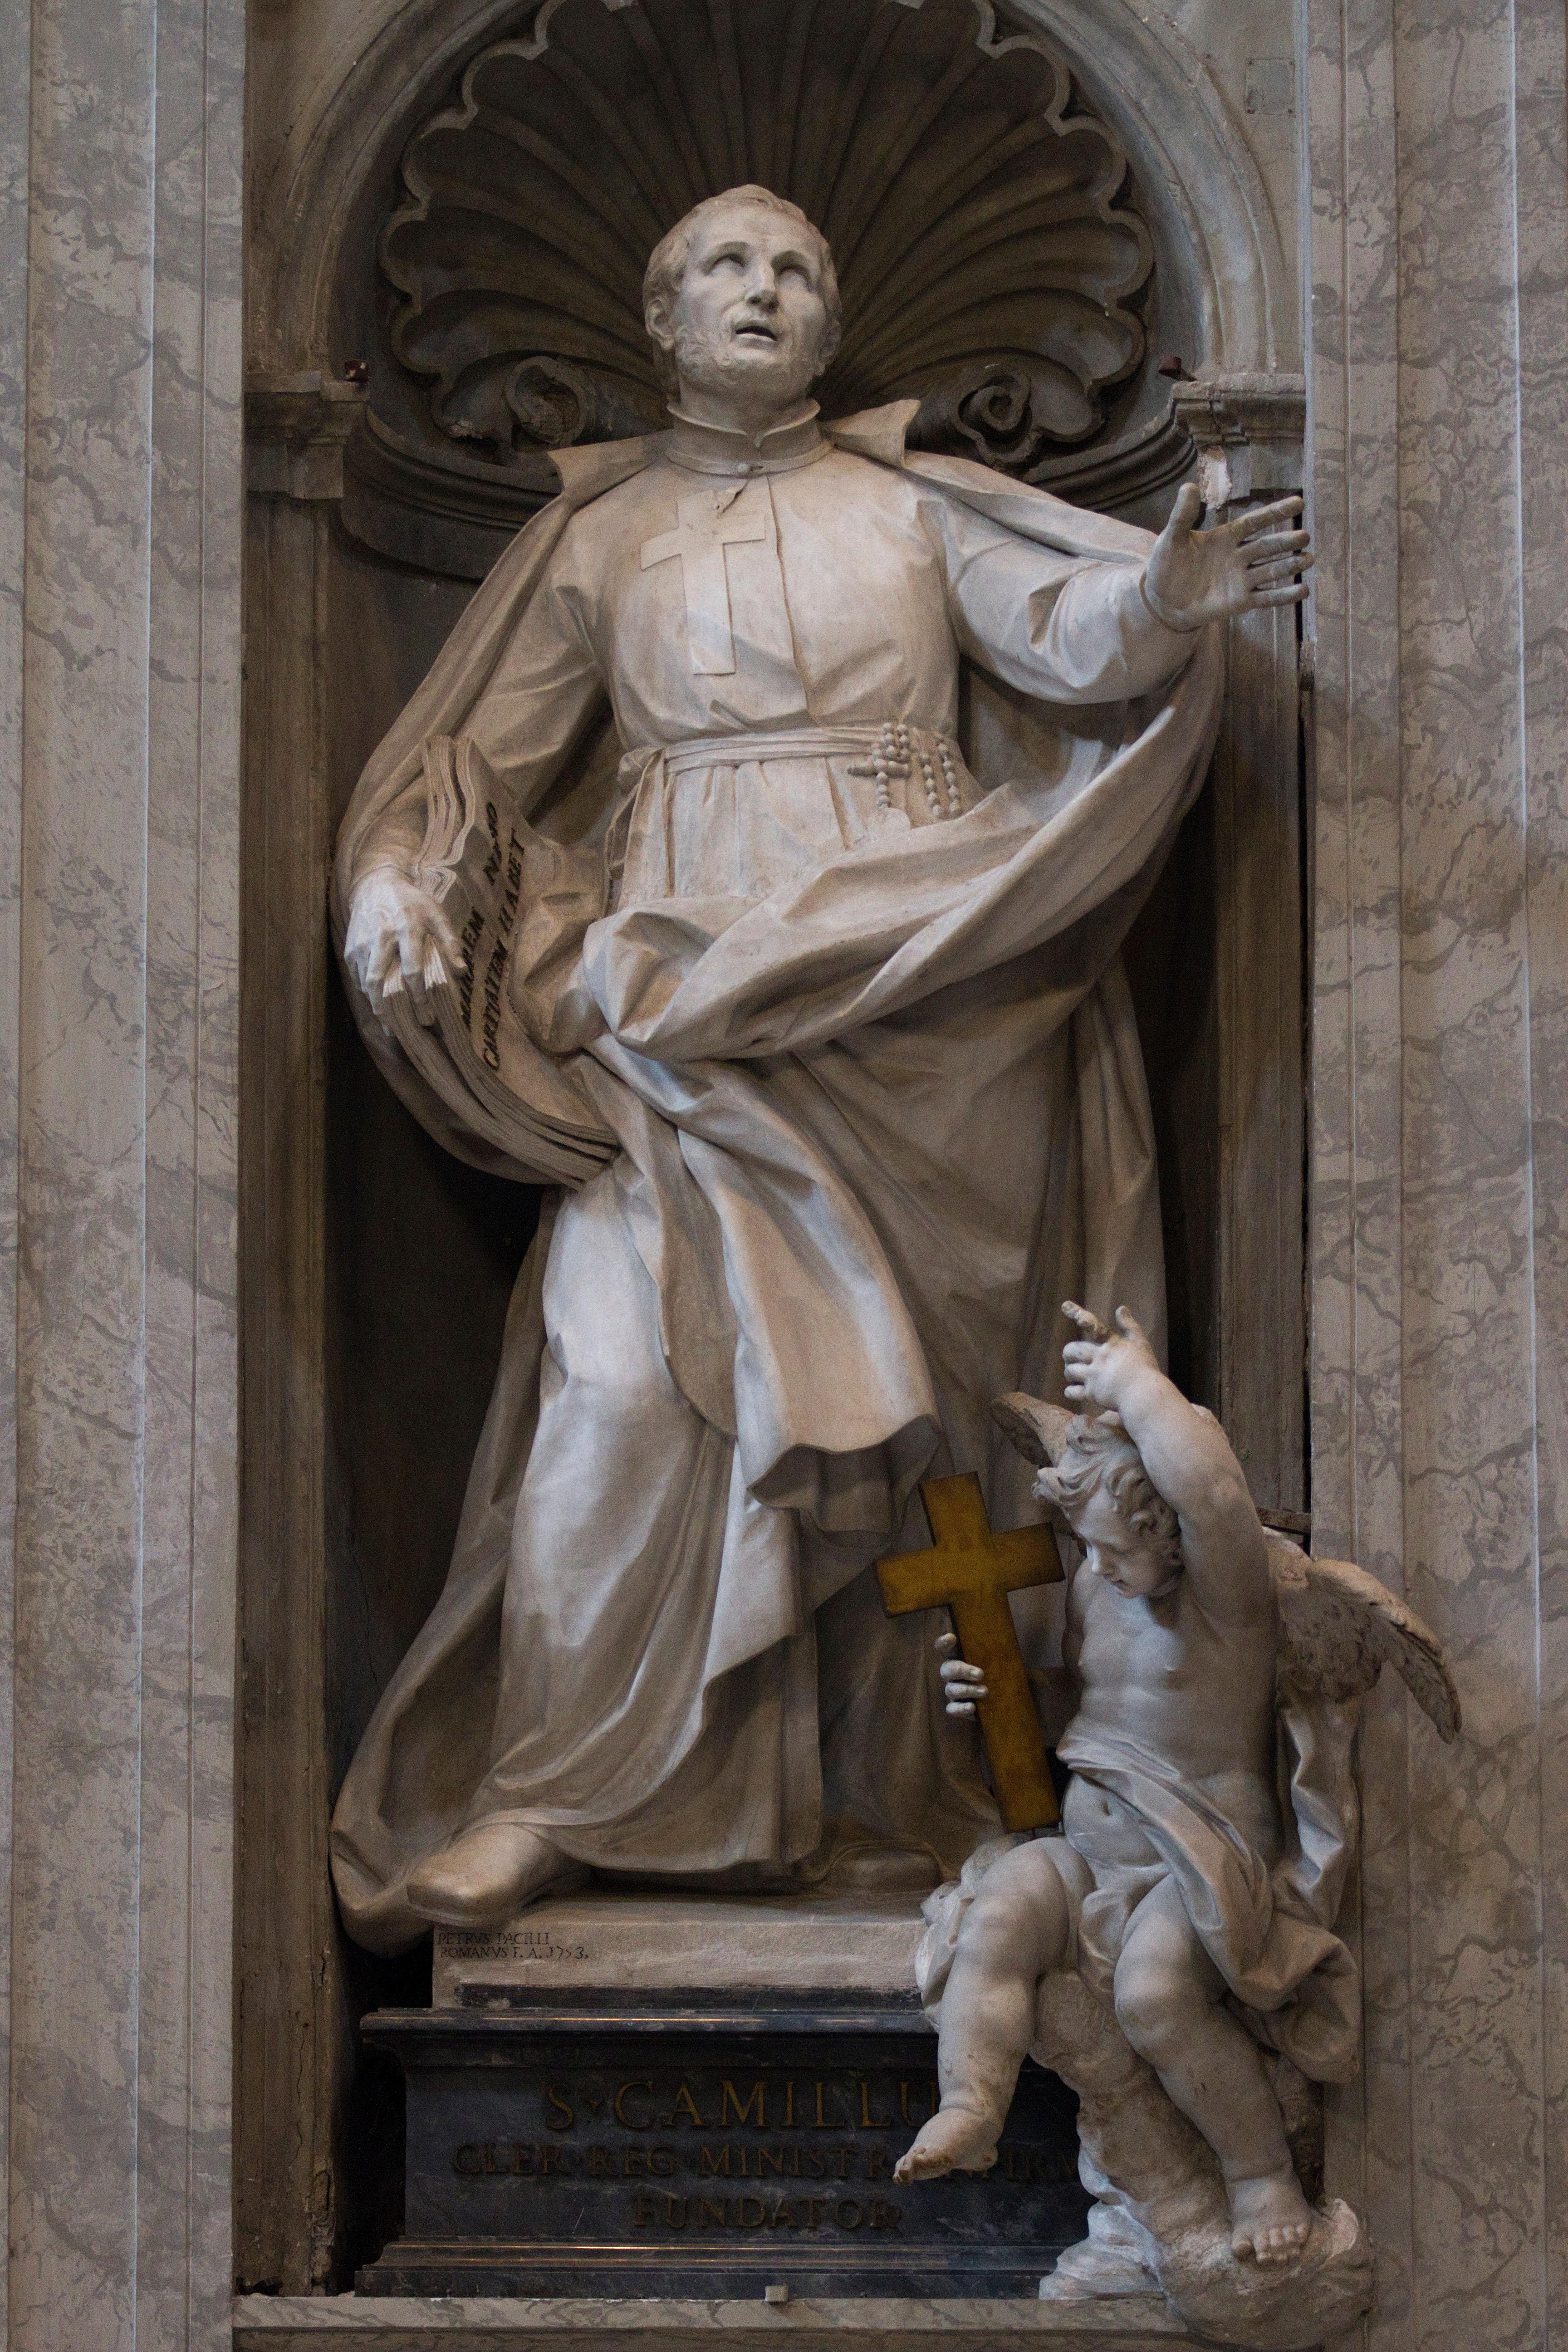 Dieses bemerkenswert flüssige Terrakotta-Bozetto entstand in Vorbereitung auf Pietro Pacillis wichtigsten öffentlichen Auftrag, eine großformatige Marmorstatue des Heiligen Camillo de Lellis für das Hauptschiff des Petersdoms in Rom. Diese